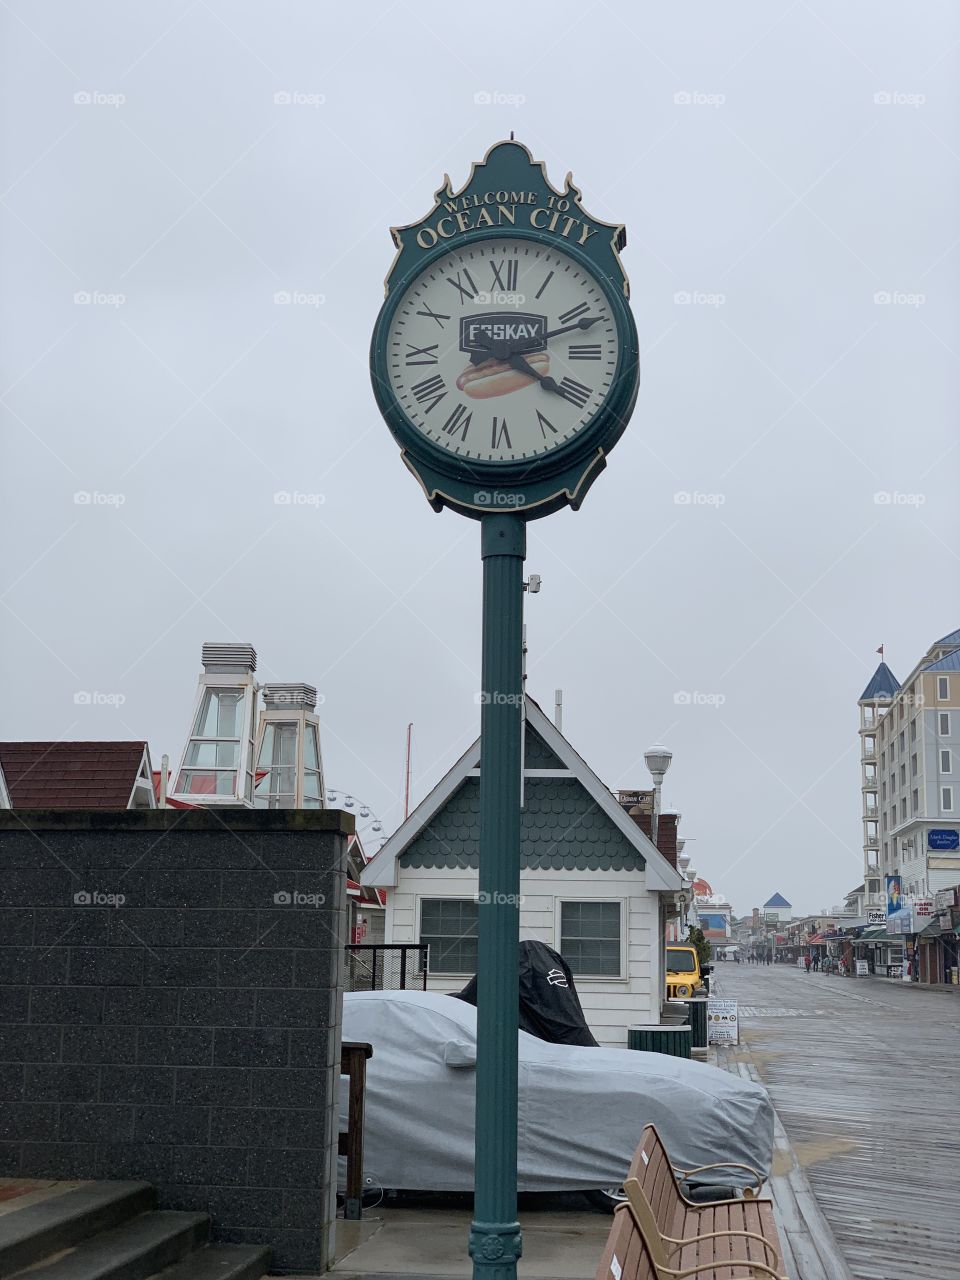 Ocean city clock 